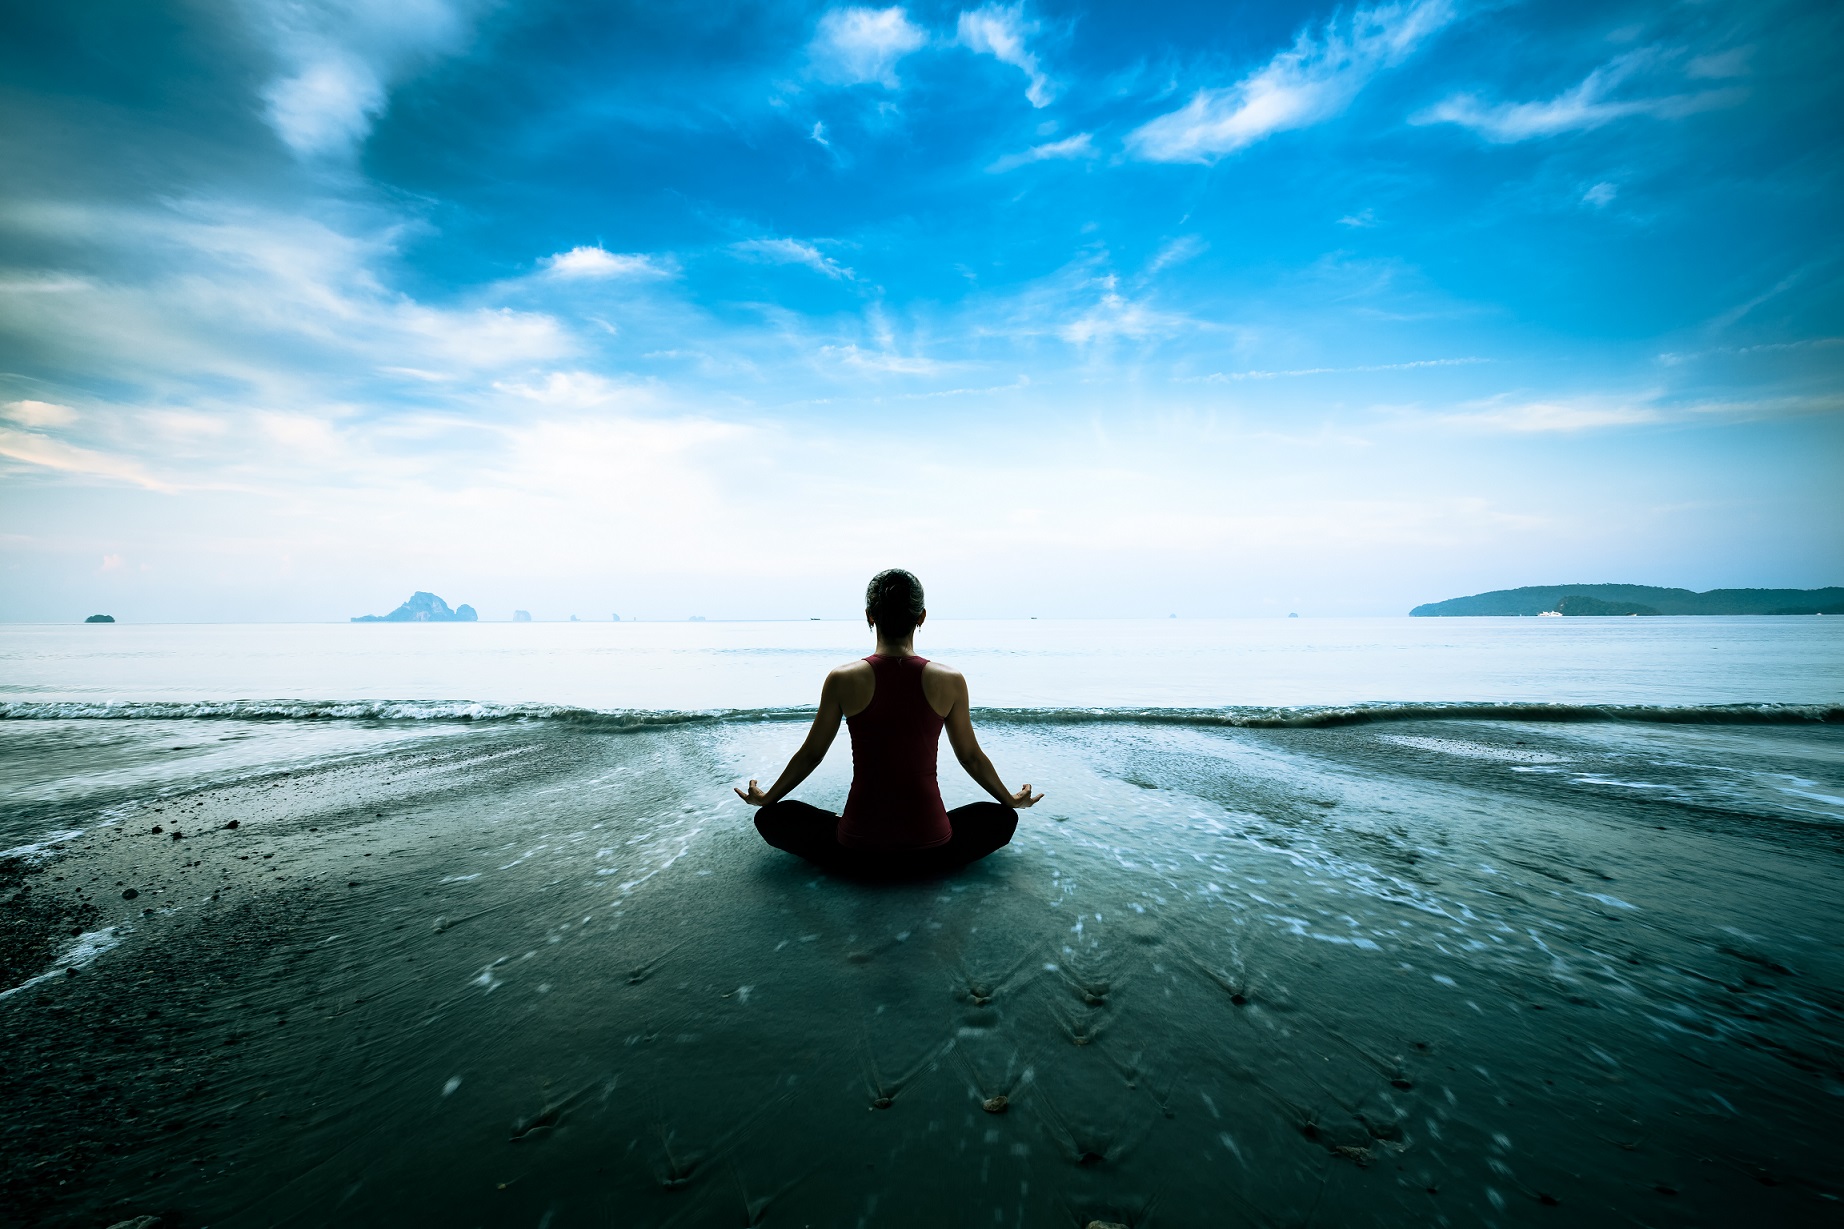 Des études avaient déjà montré que la méditation agit sur le cerveau. Désormais, il semble qu'elle agisse également sur l'épigénome. © Patrick Foto, Shutterstock